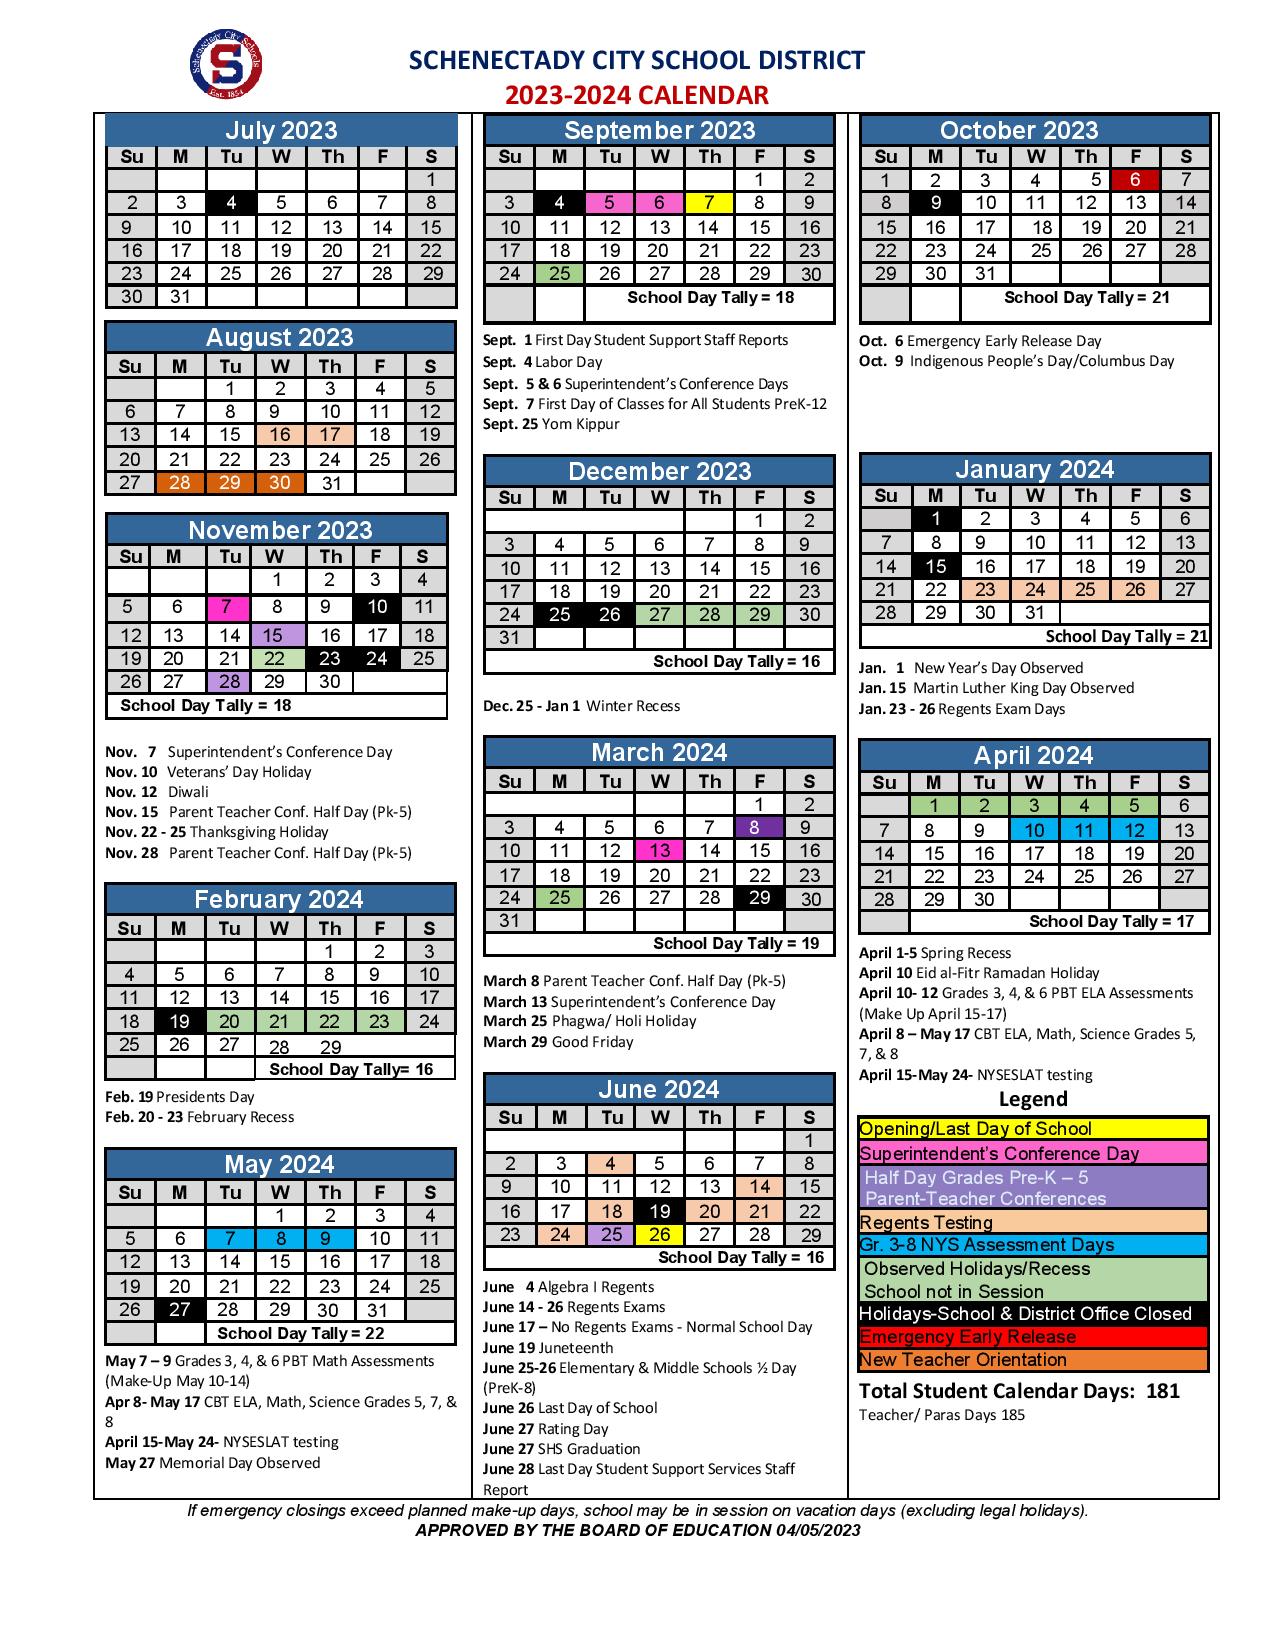 Schenectady City School District Calendar 2023-2024